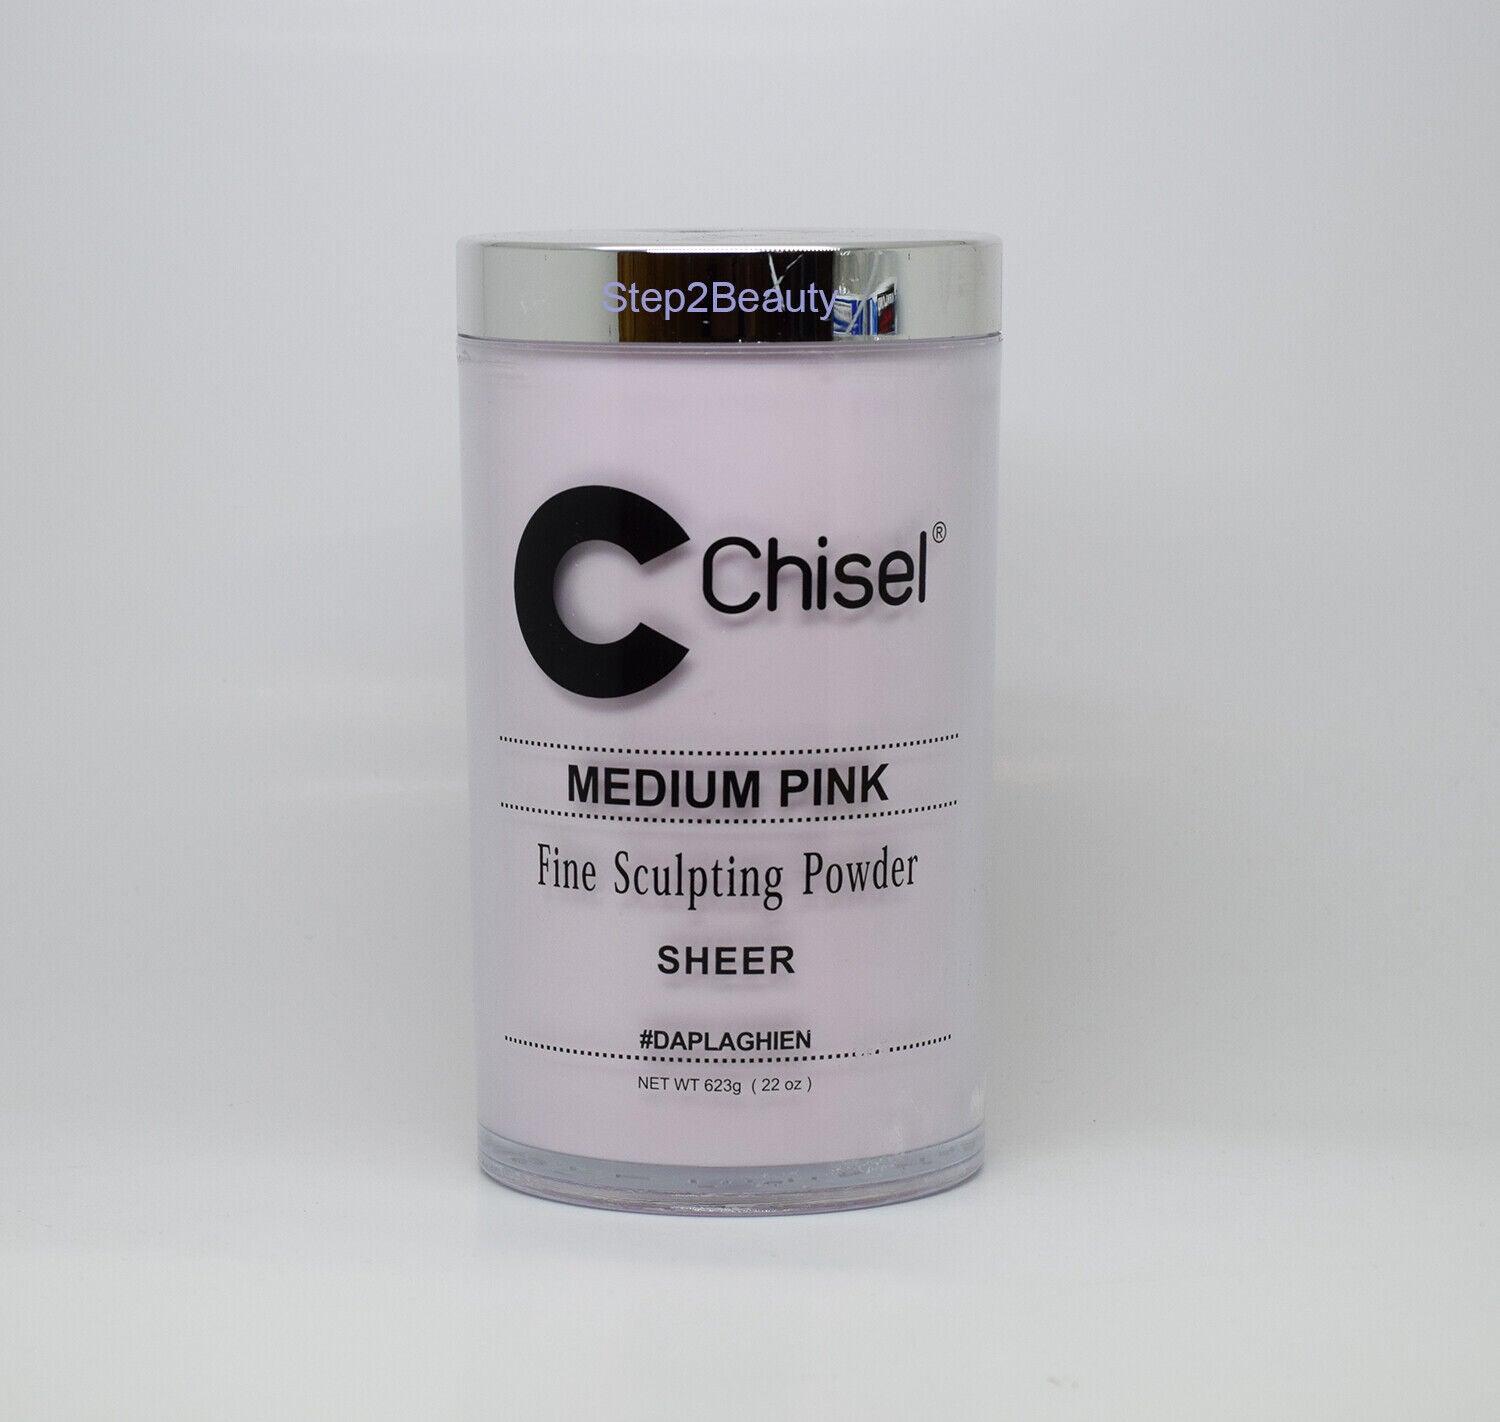 Chisel Daplaghien Powder 22 Oz - Medium Pink Sheer